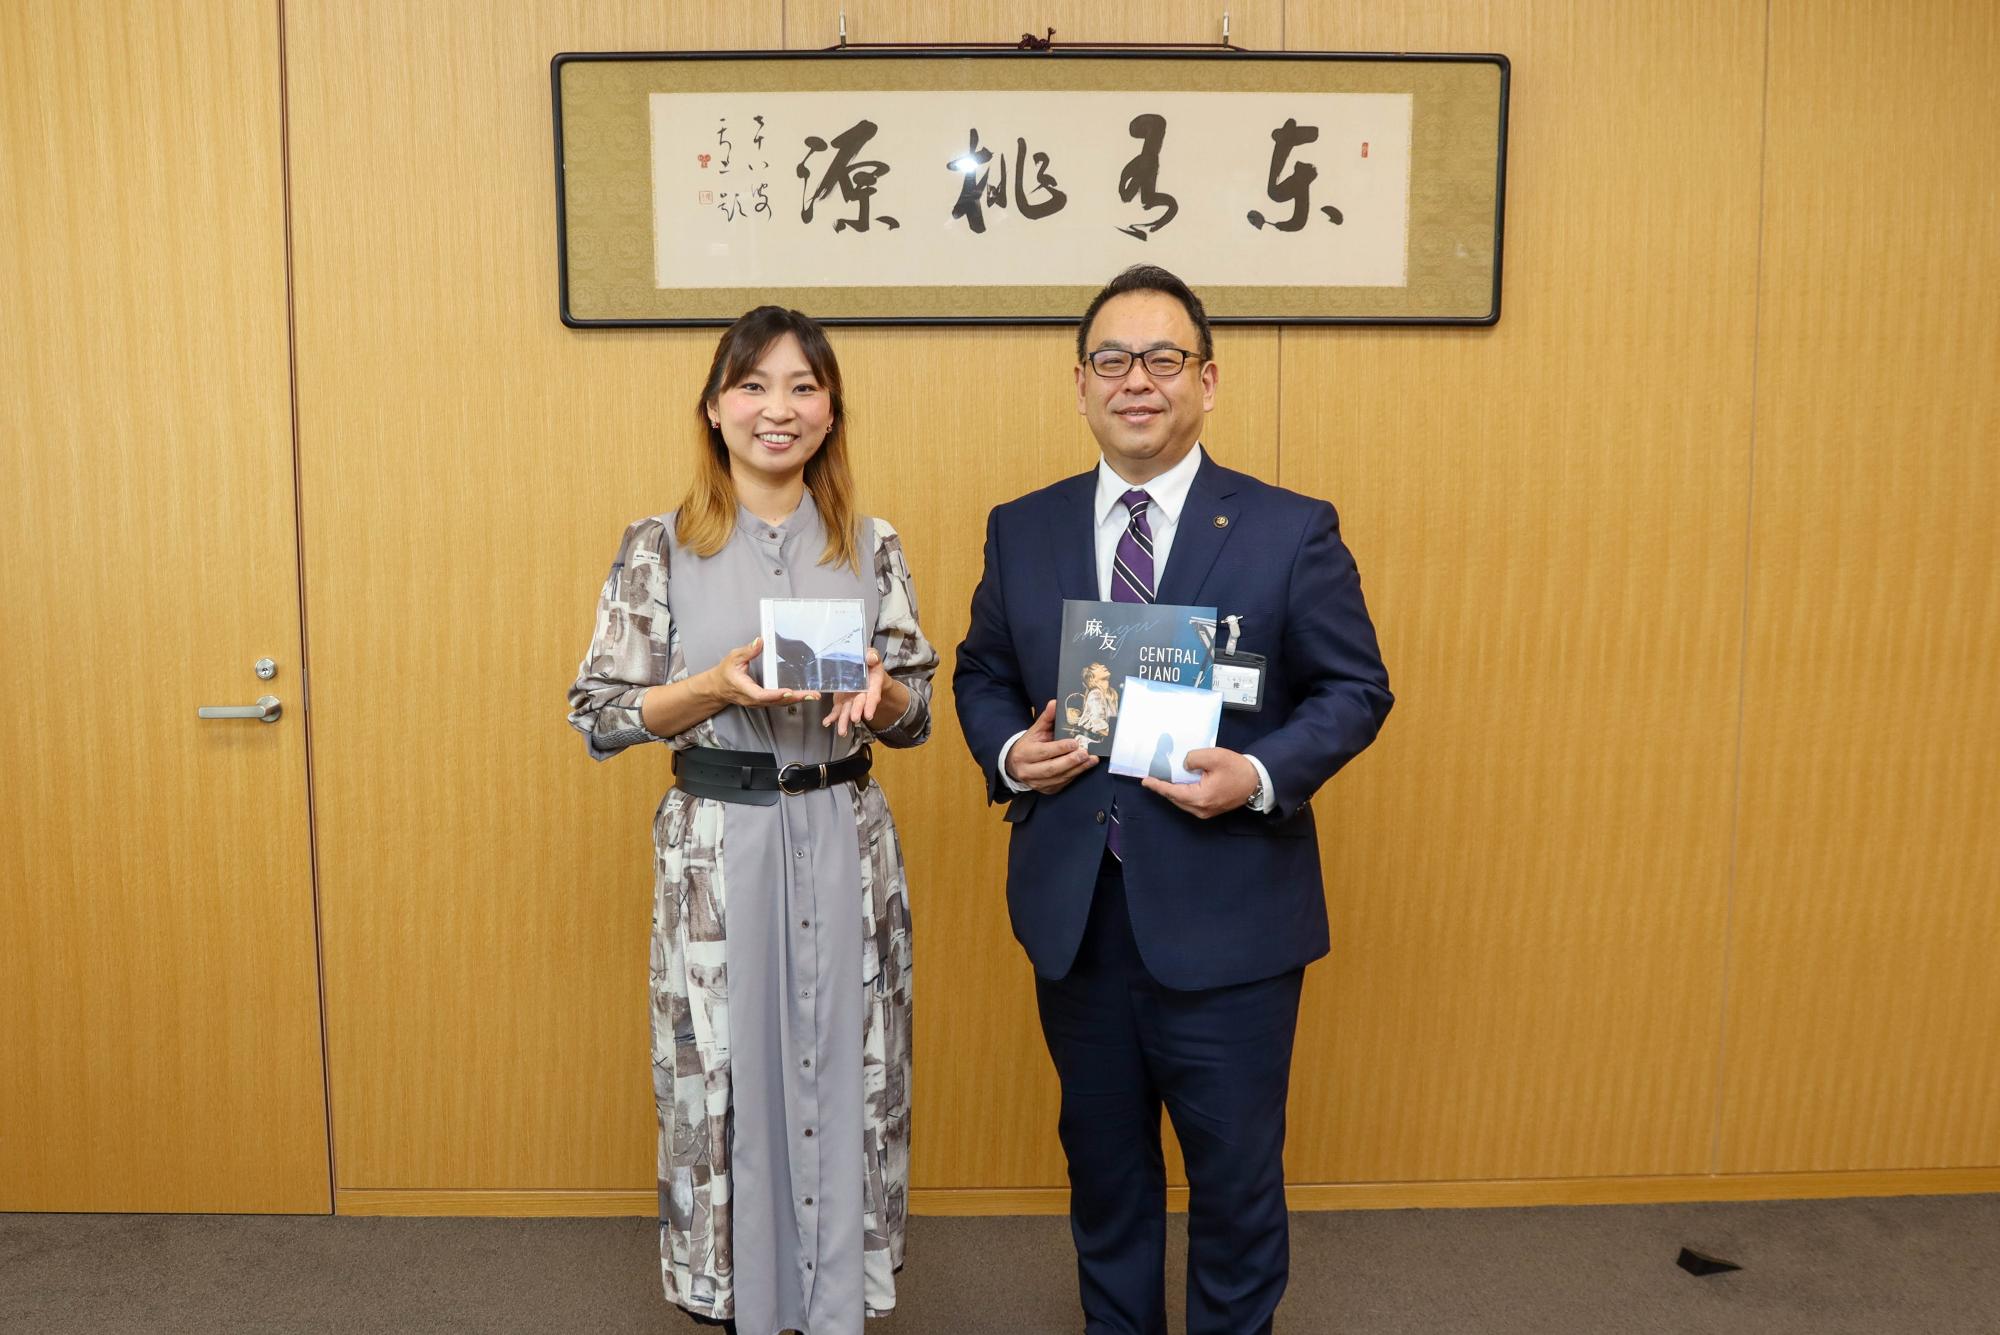 千曲市出身シンガーソングライター麻友さんと小川市長が、麻友さんのCDとライブパンフレットを手に持って記念撮影